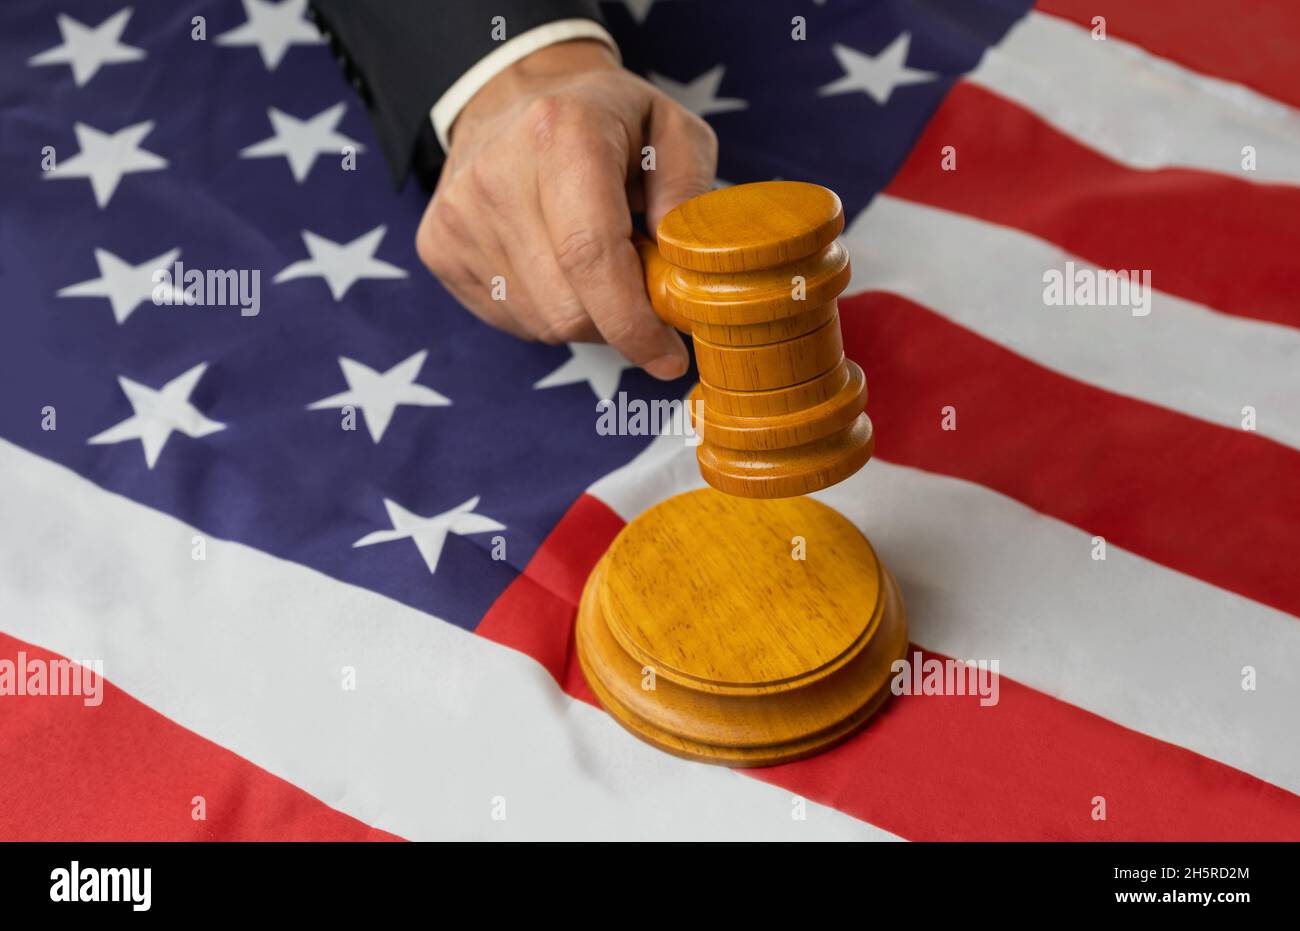 Mann Richter Hand hält Holzgavel auf klingenden Block auf usa Flagge Hintergrund Knall.Justice Konzept mit vereinigte Staaten von amerika Flagge Stockfoto